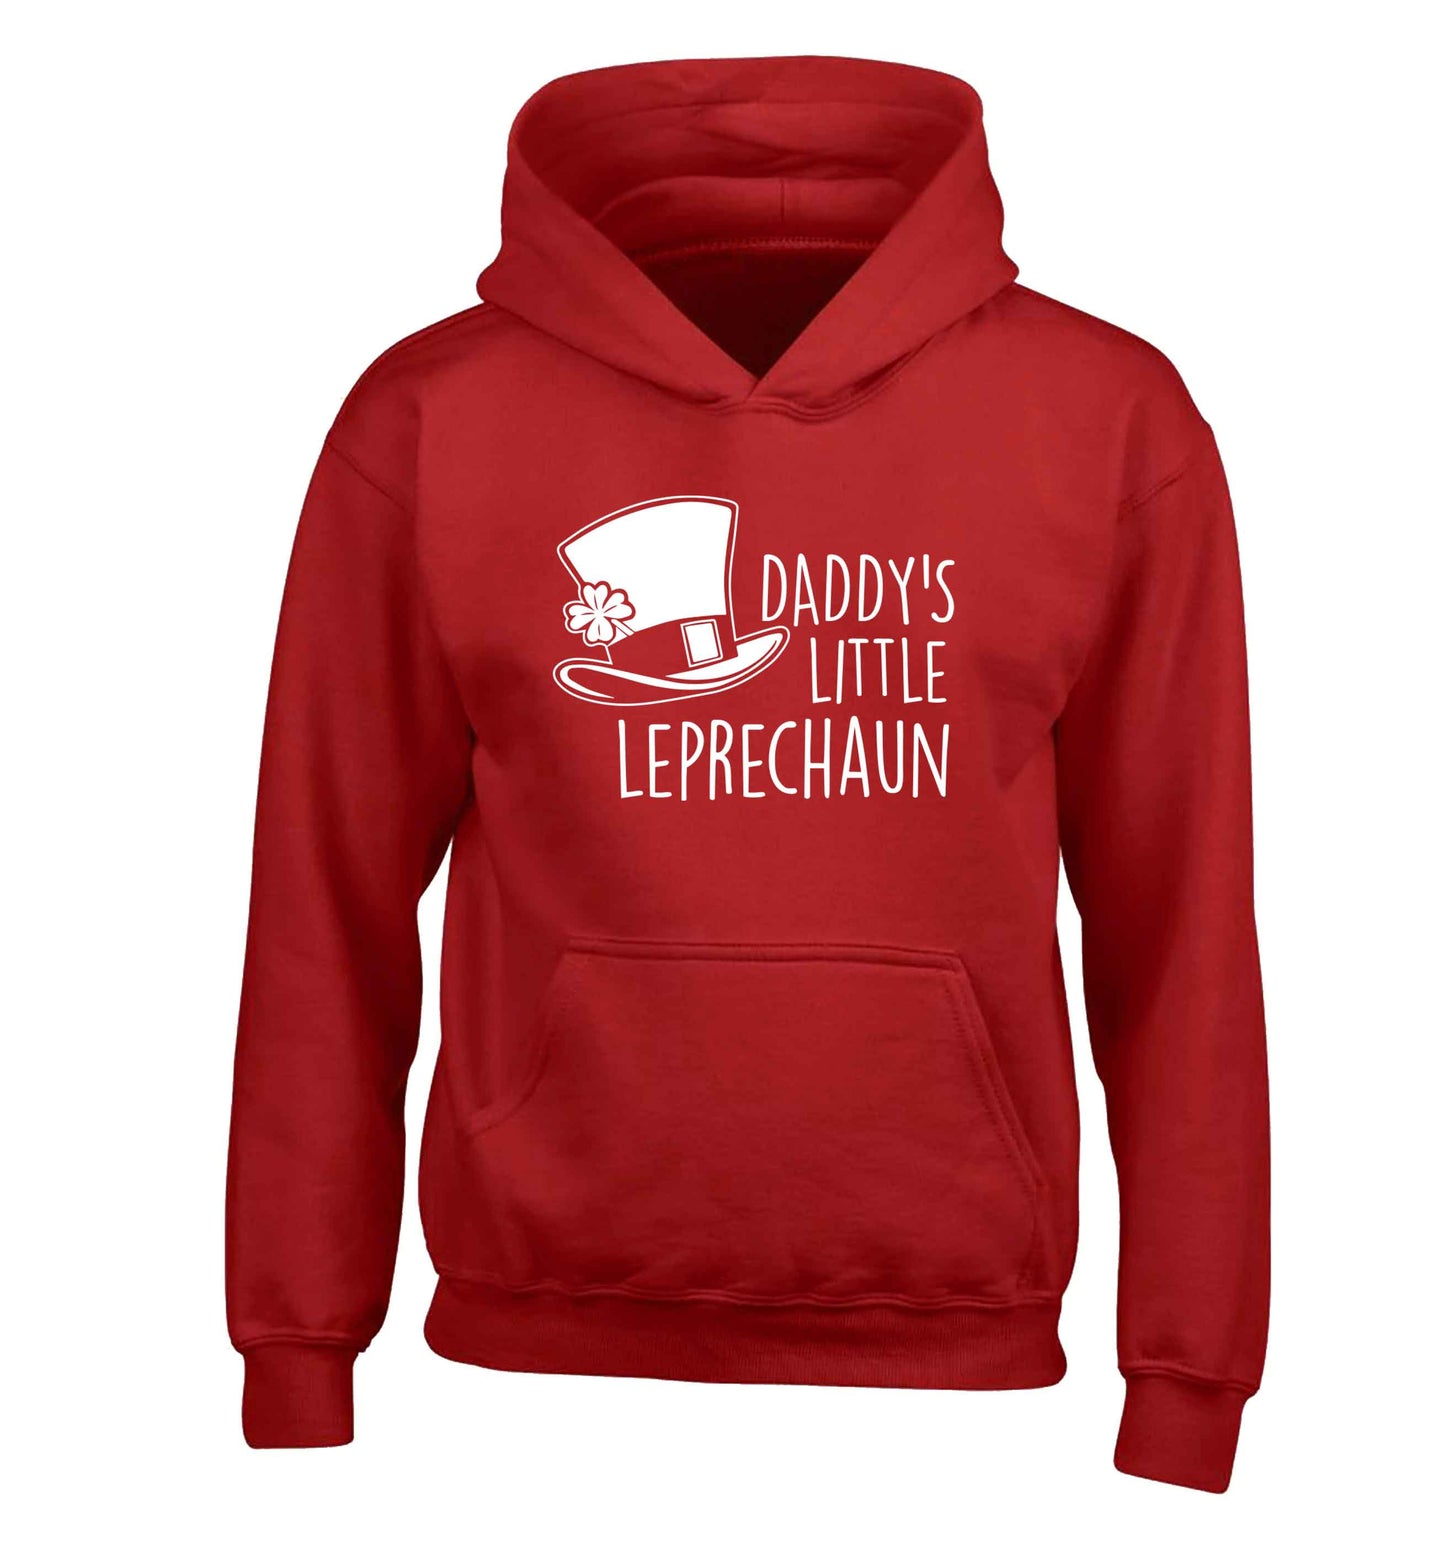 Daddy's little leprechaun children's red hoodie 12-13 Years